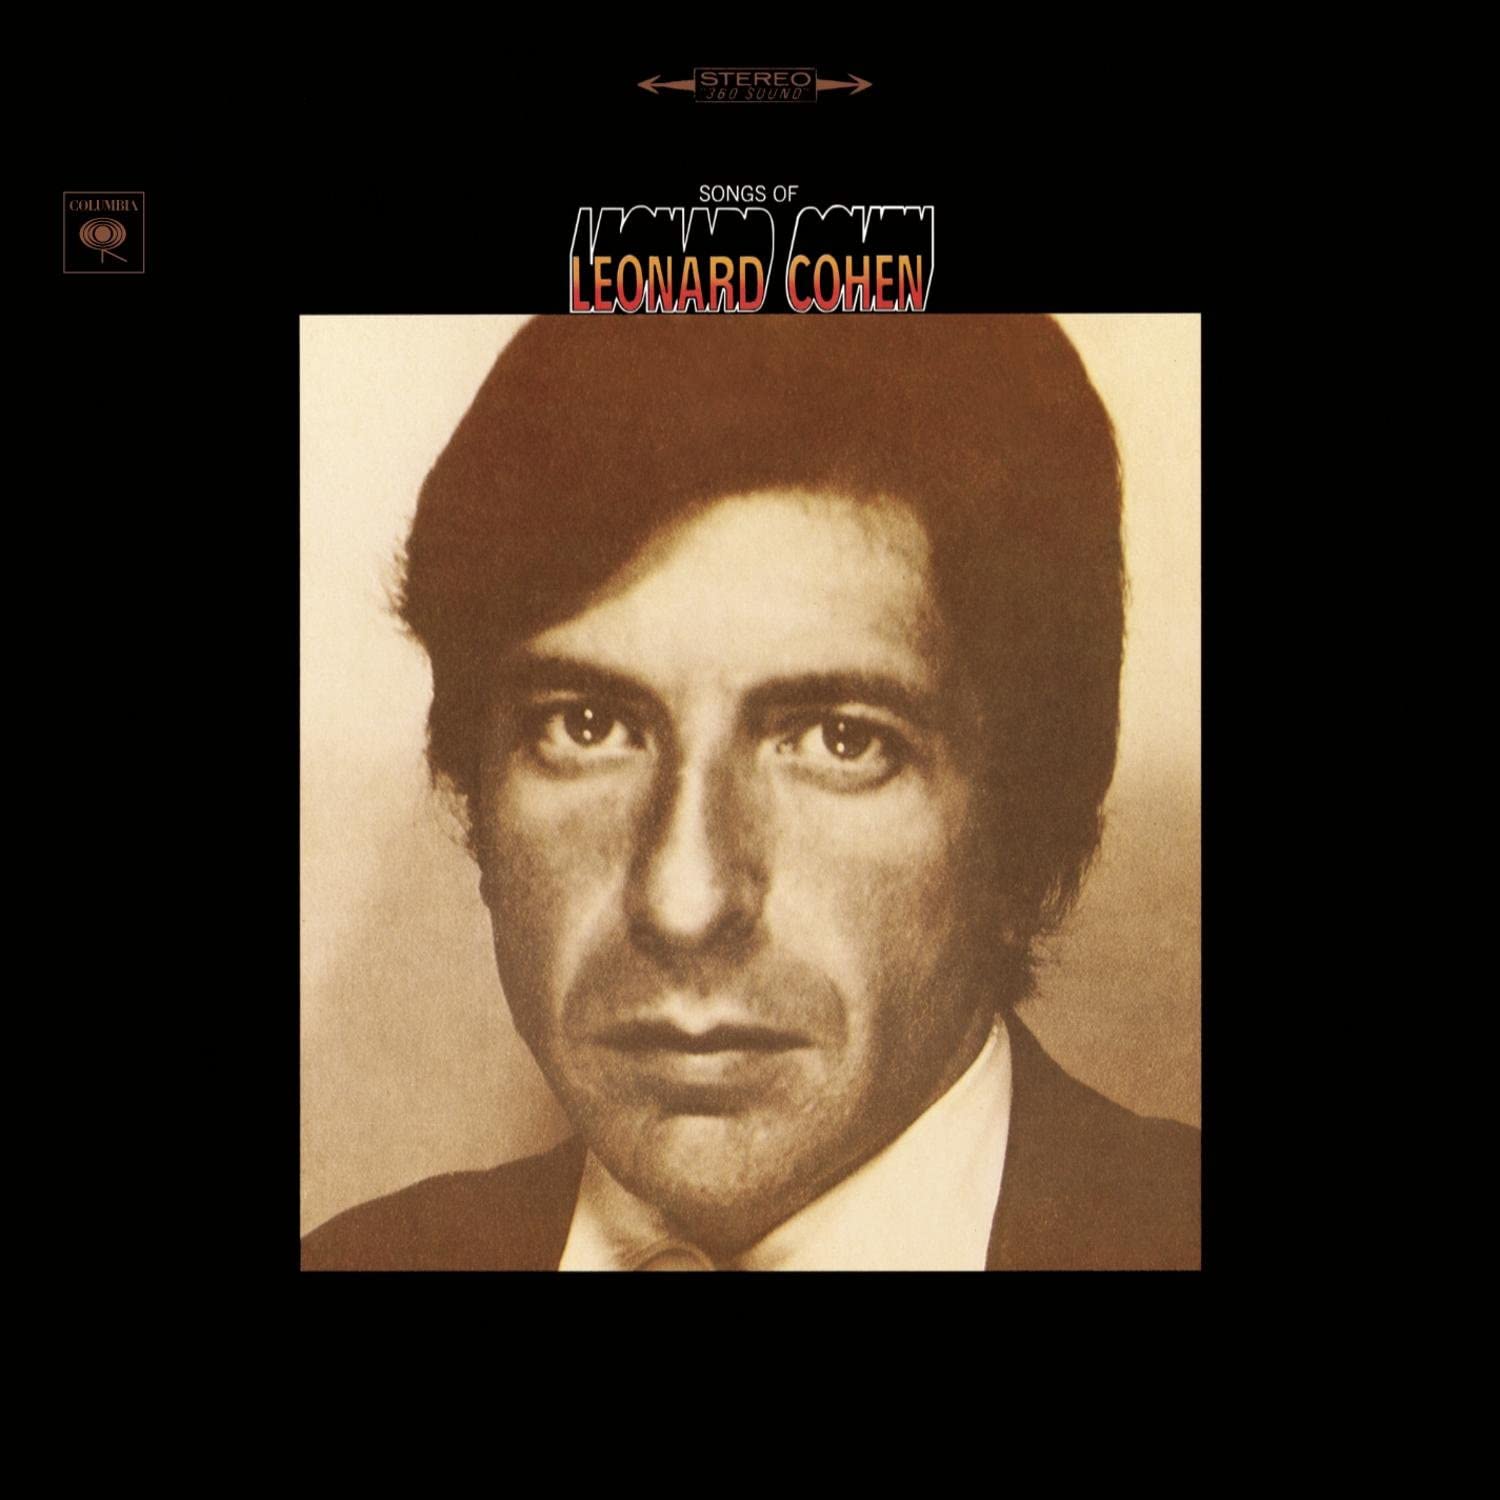 Songs of Leonard Cohen by Leonard Cohen